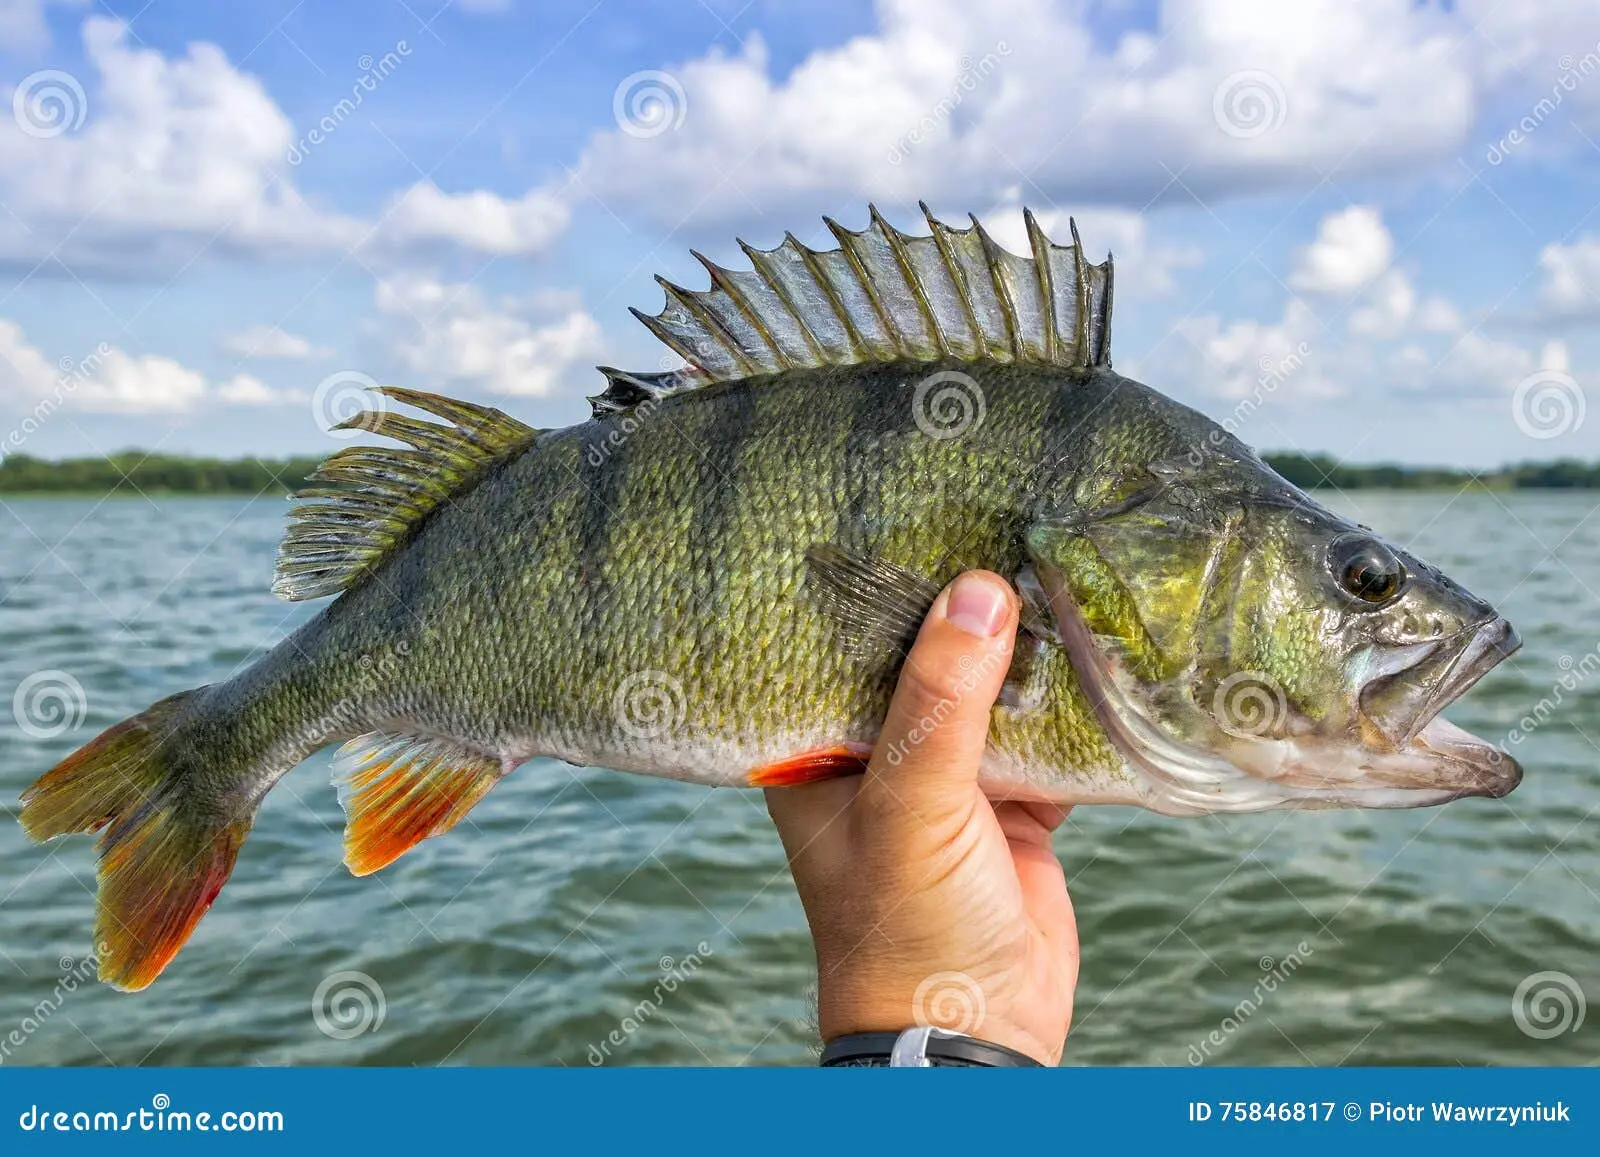 pescado de lago - Cómo se llama el pescado de agua dulce